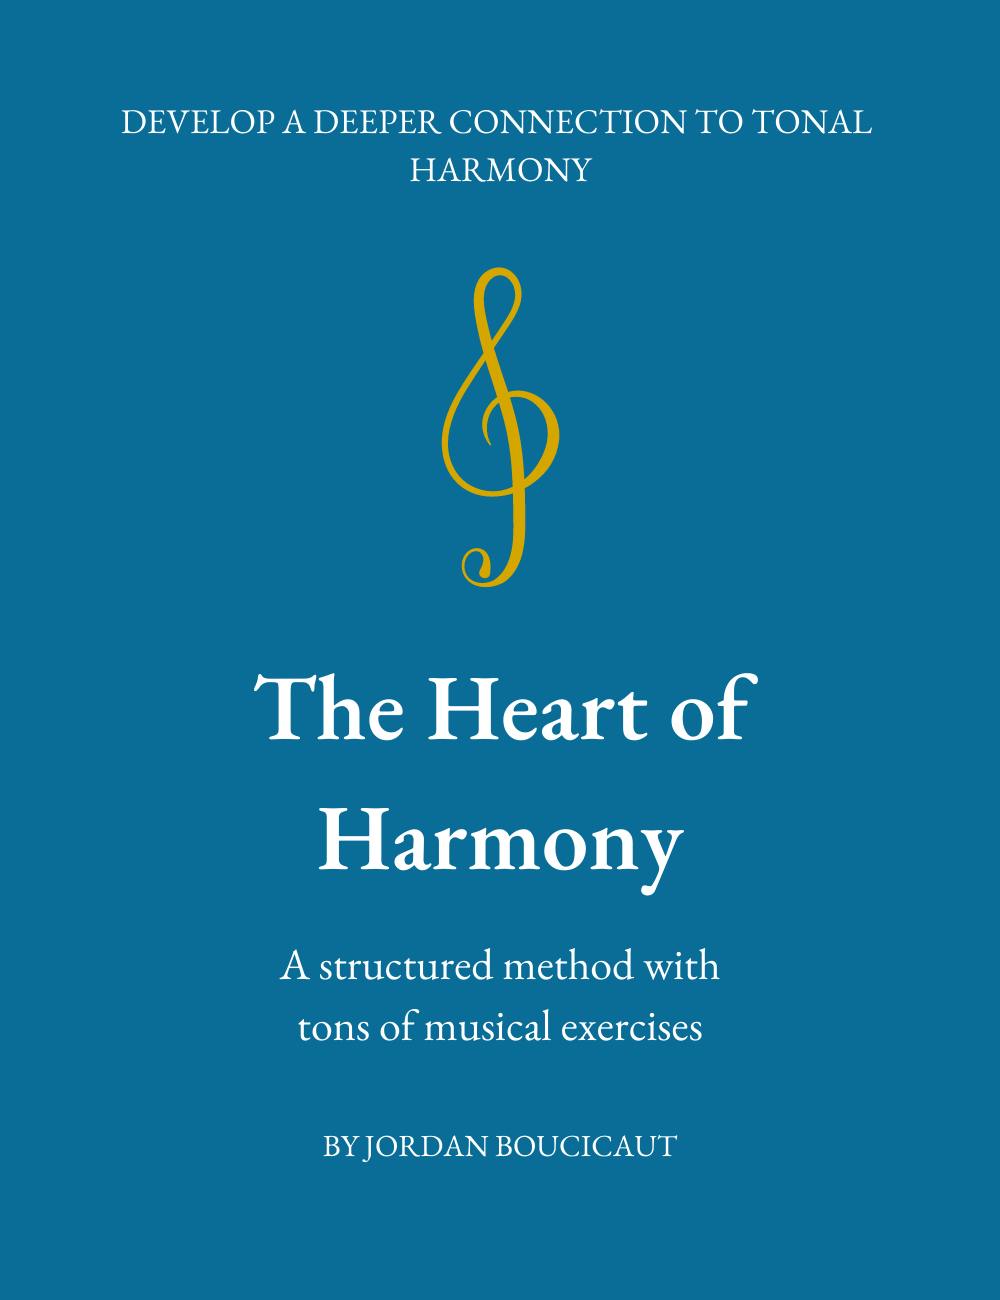 The Heart of Harmony